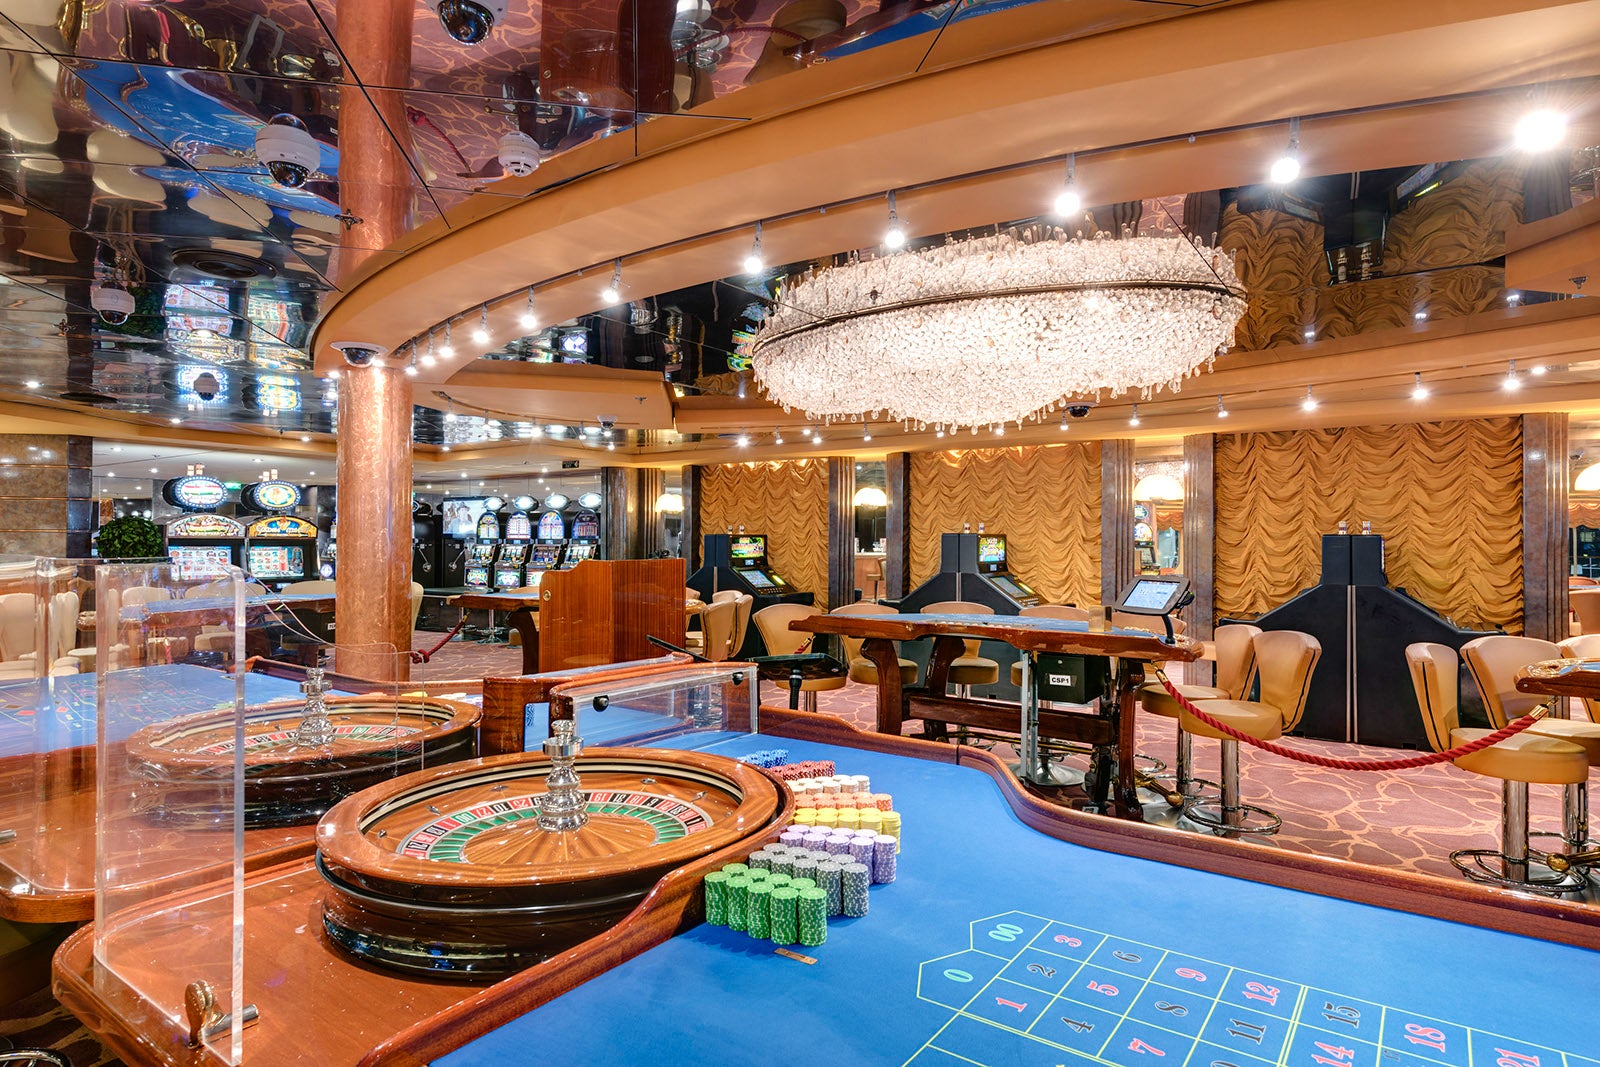 pride of america cruise ship casino